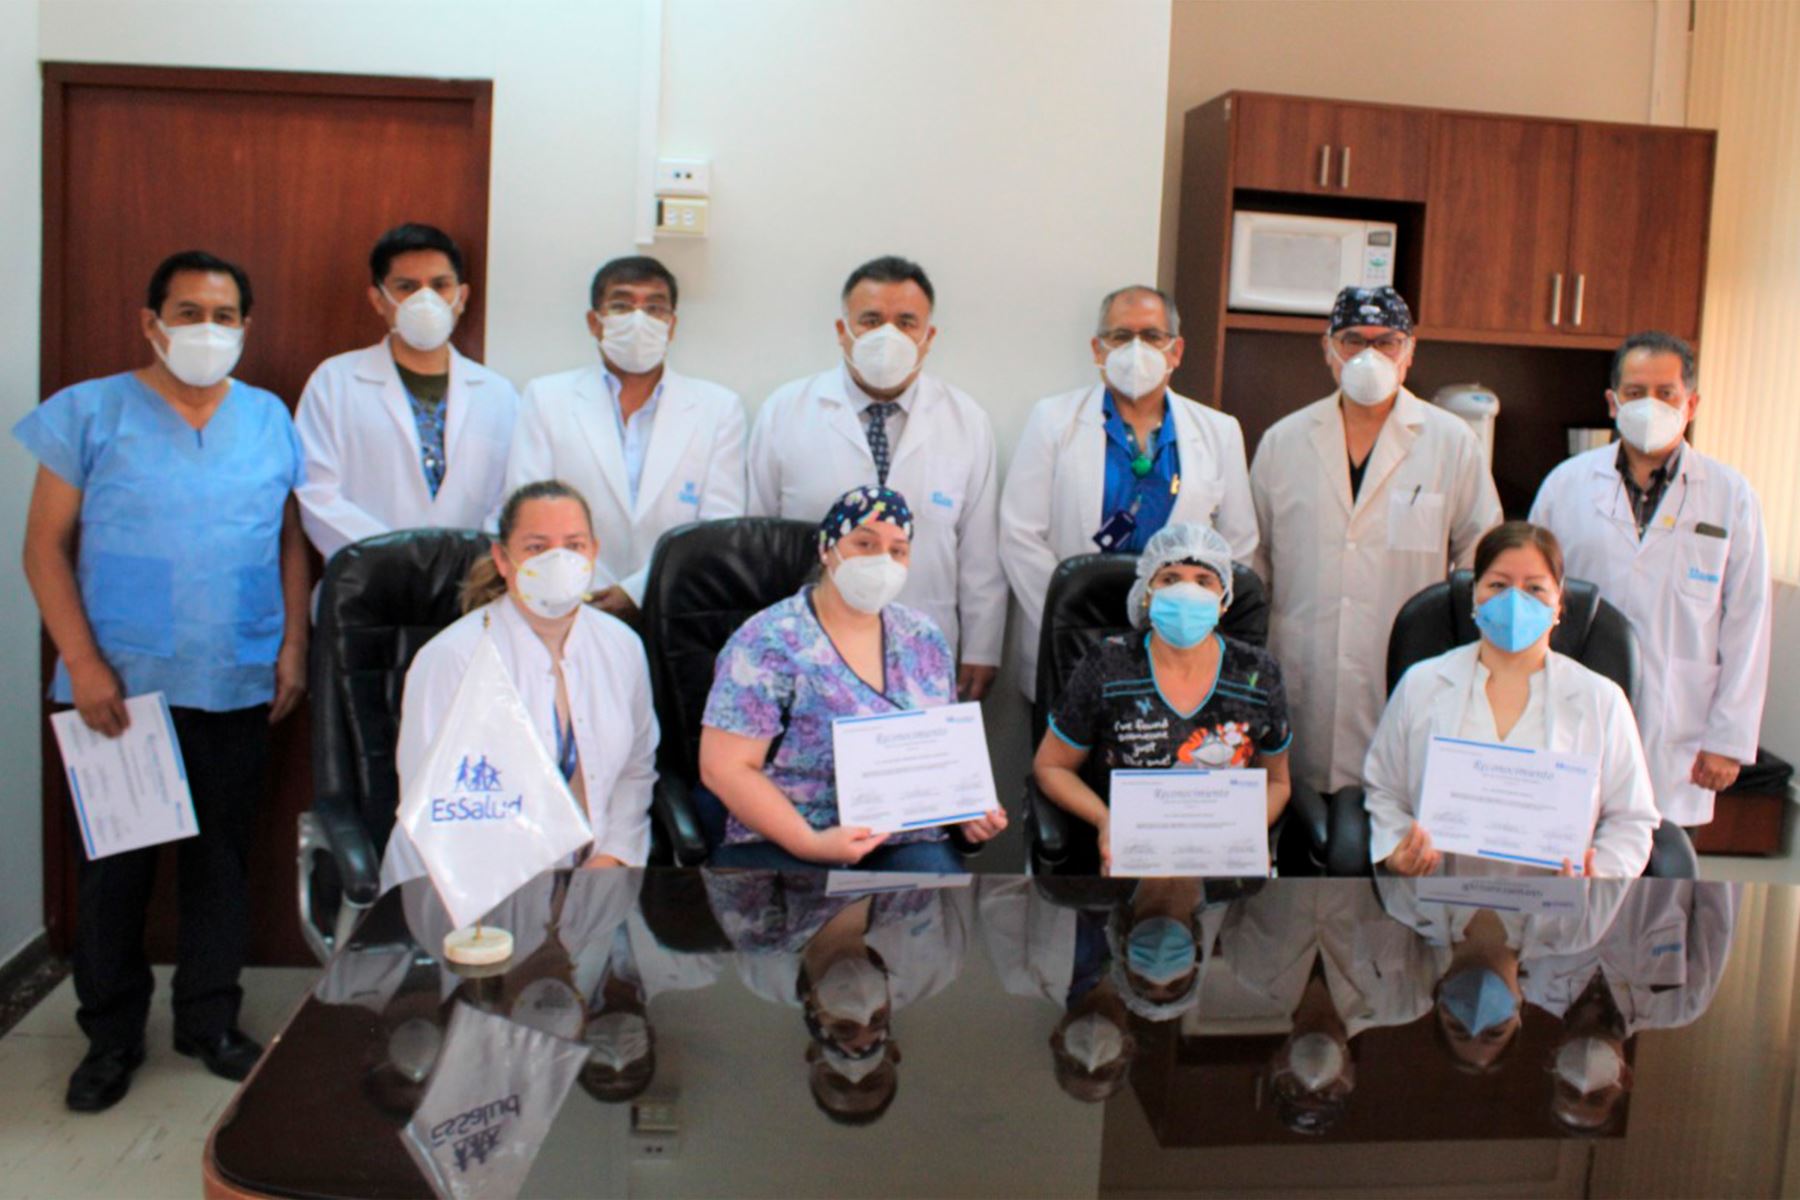 Pediatras del Hospital Alberto Sabogal fueron condecorados. Foto: Cortesía